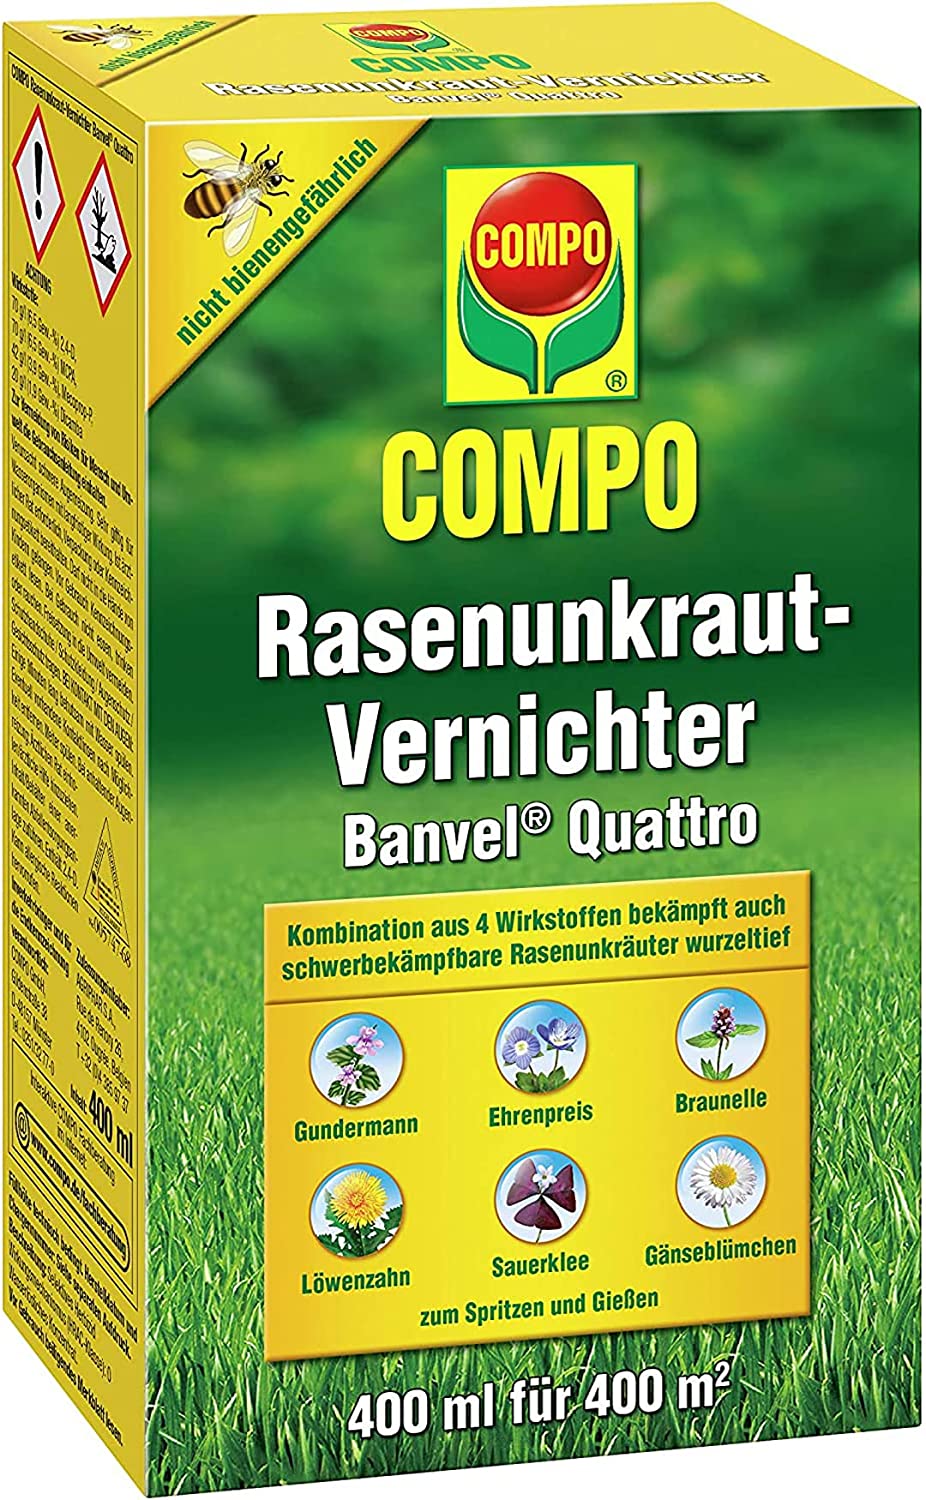 COMPO Rasenunkraut-Vernichter Banvel® Quattro 400 ml für 400 m² 